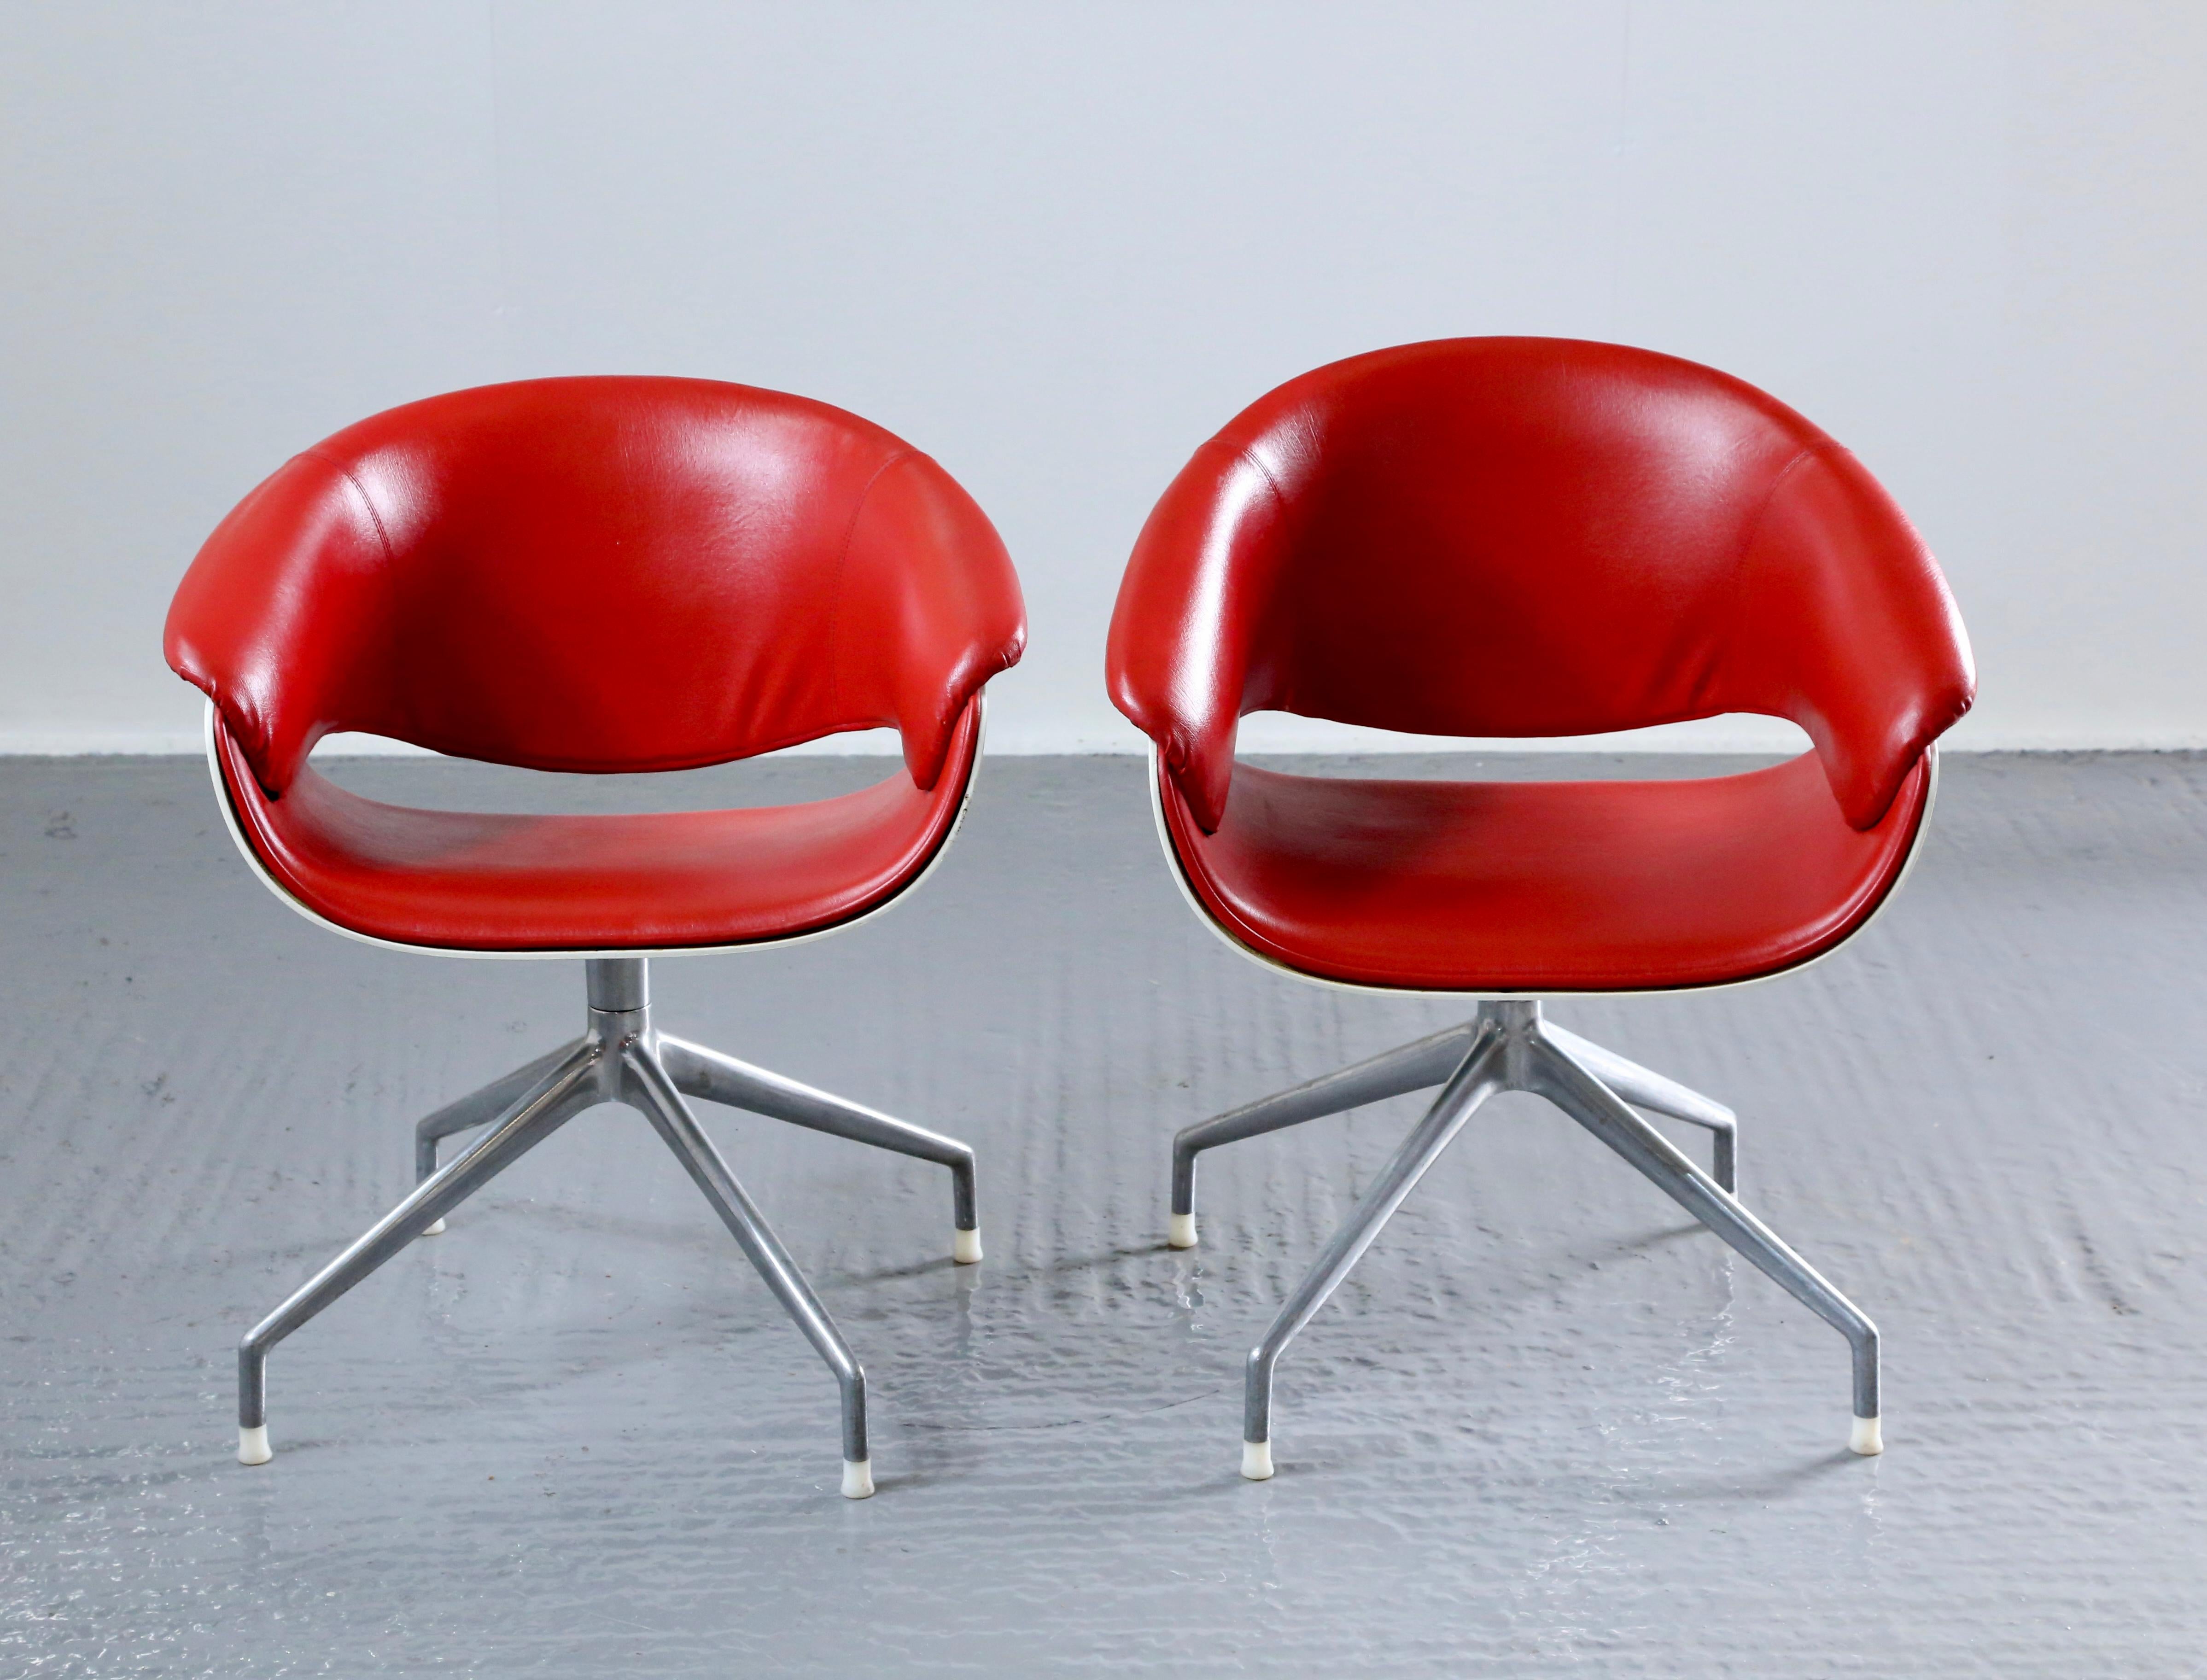 Bemerkenswertes Paar Sina-Drehstühle, entworfen von Uwe Fischer für B&B Italia. Dieses Set besteht aus zwei Akzentstühlen, die perfekt geeignet sind, um Ihrer Einrichtung einen Farbakzent zu verleihen. Mit ihrer Drehfunktion ermöglichen diese Stühle